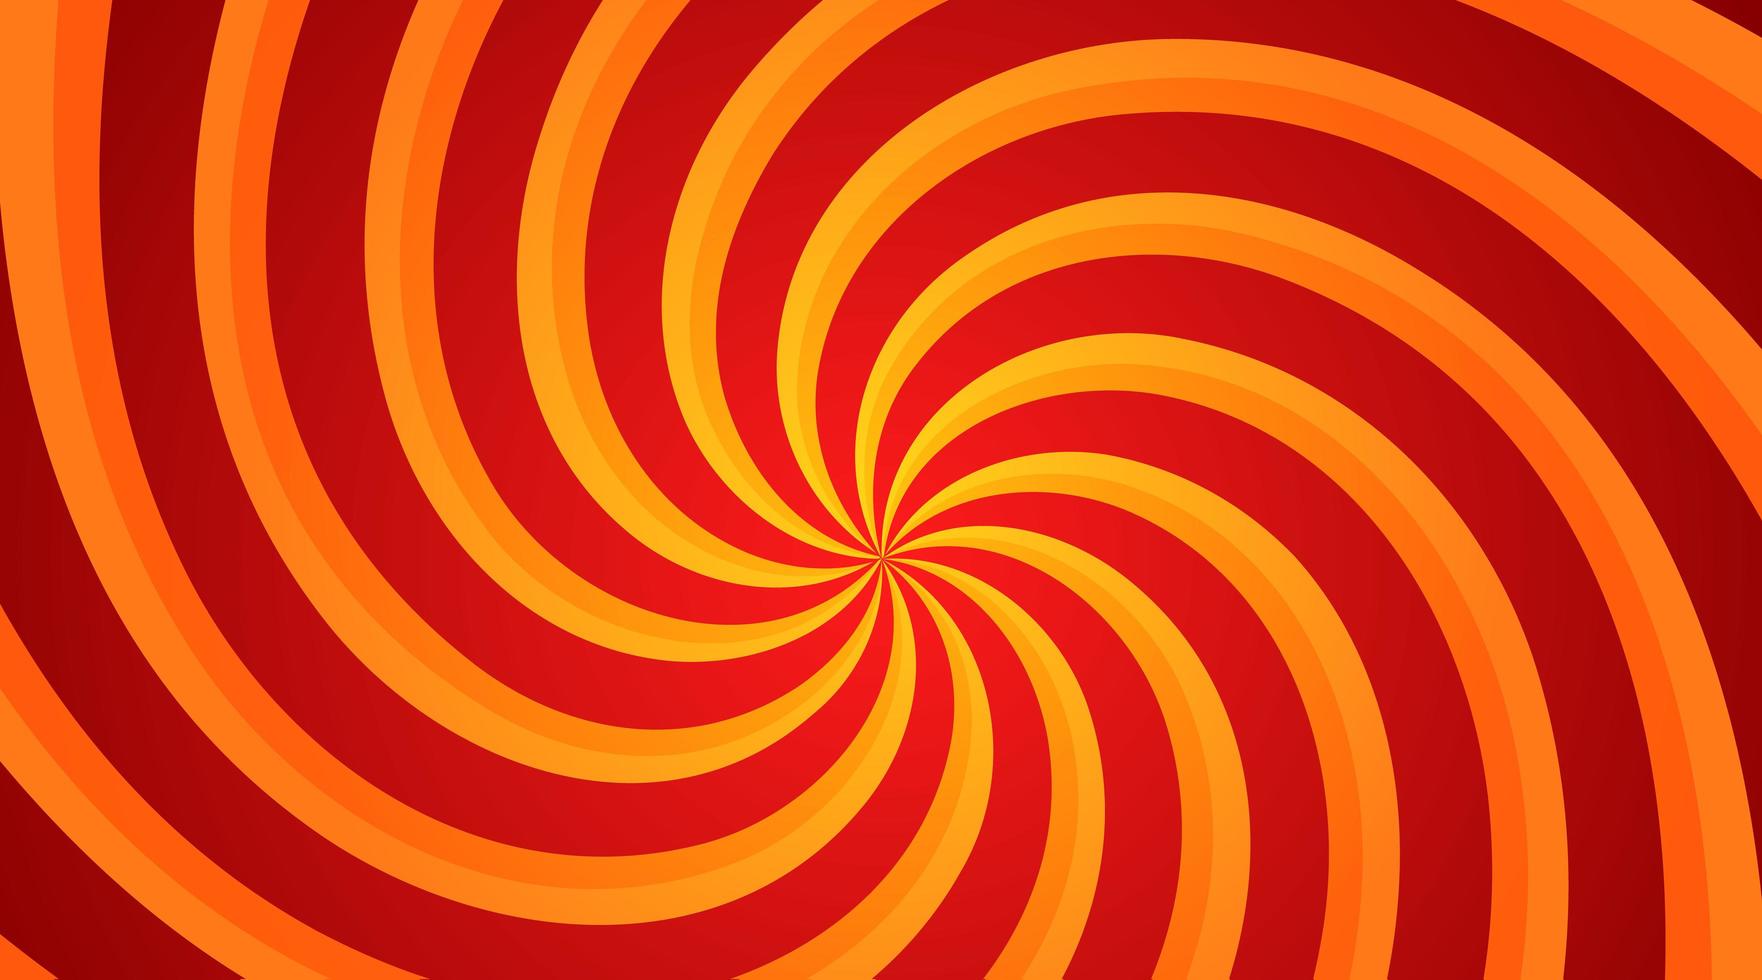 rode en gele spiraalvormige swirl radiale achtergrond. vortex en helix achtergrond. vector illustratie